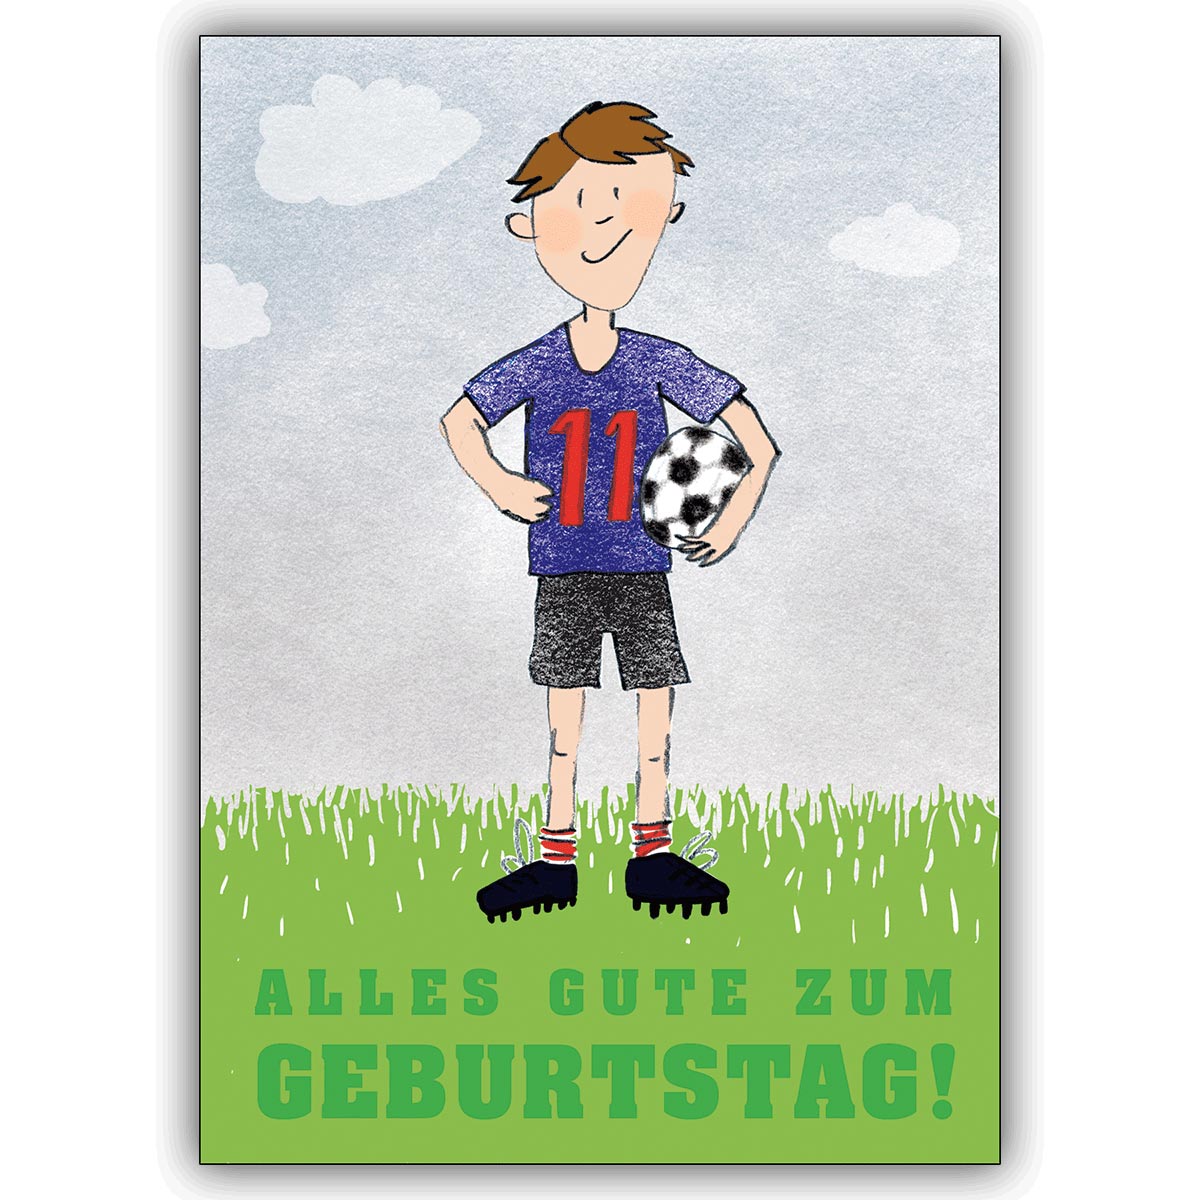 Großartige Grusskarte zum 11. Geburtstag mit coolem Fußballer: Alles Gute zum Geburtstag!